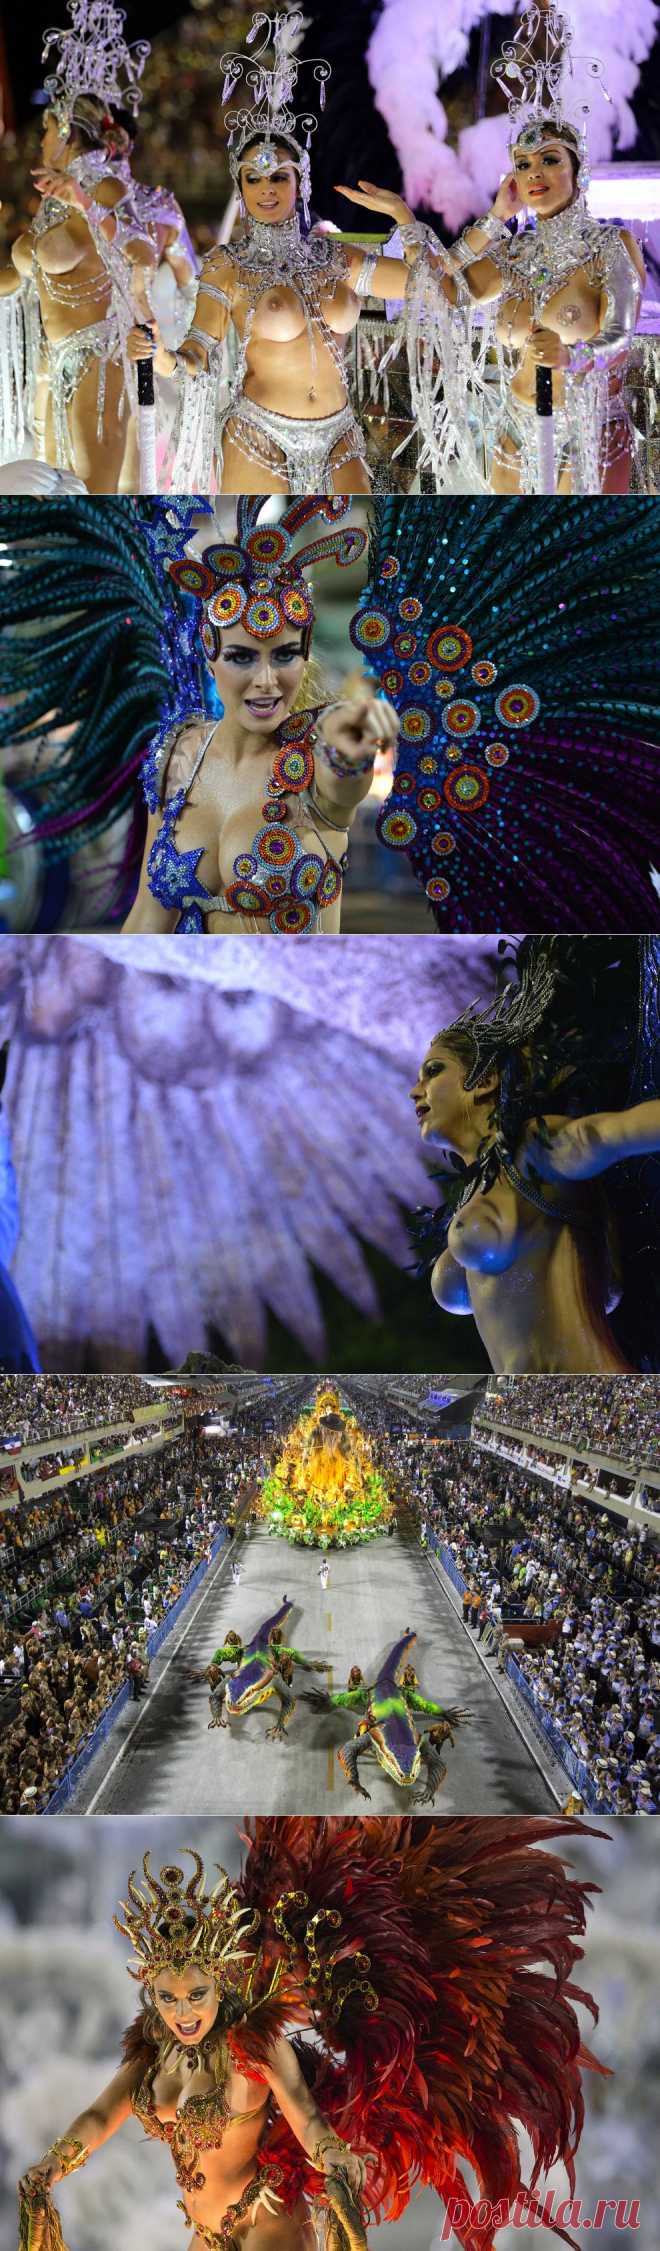 >> Карнавалы 2014 | ФОТО НОВОСТИ